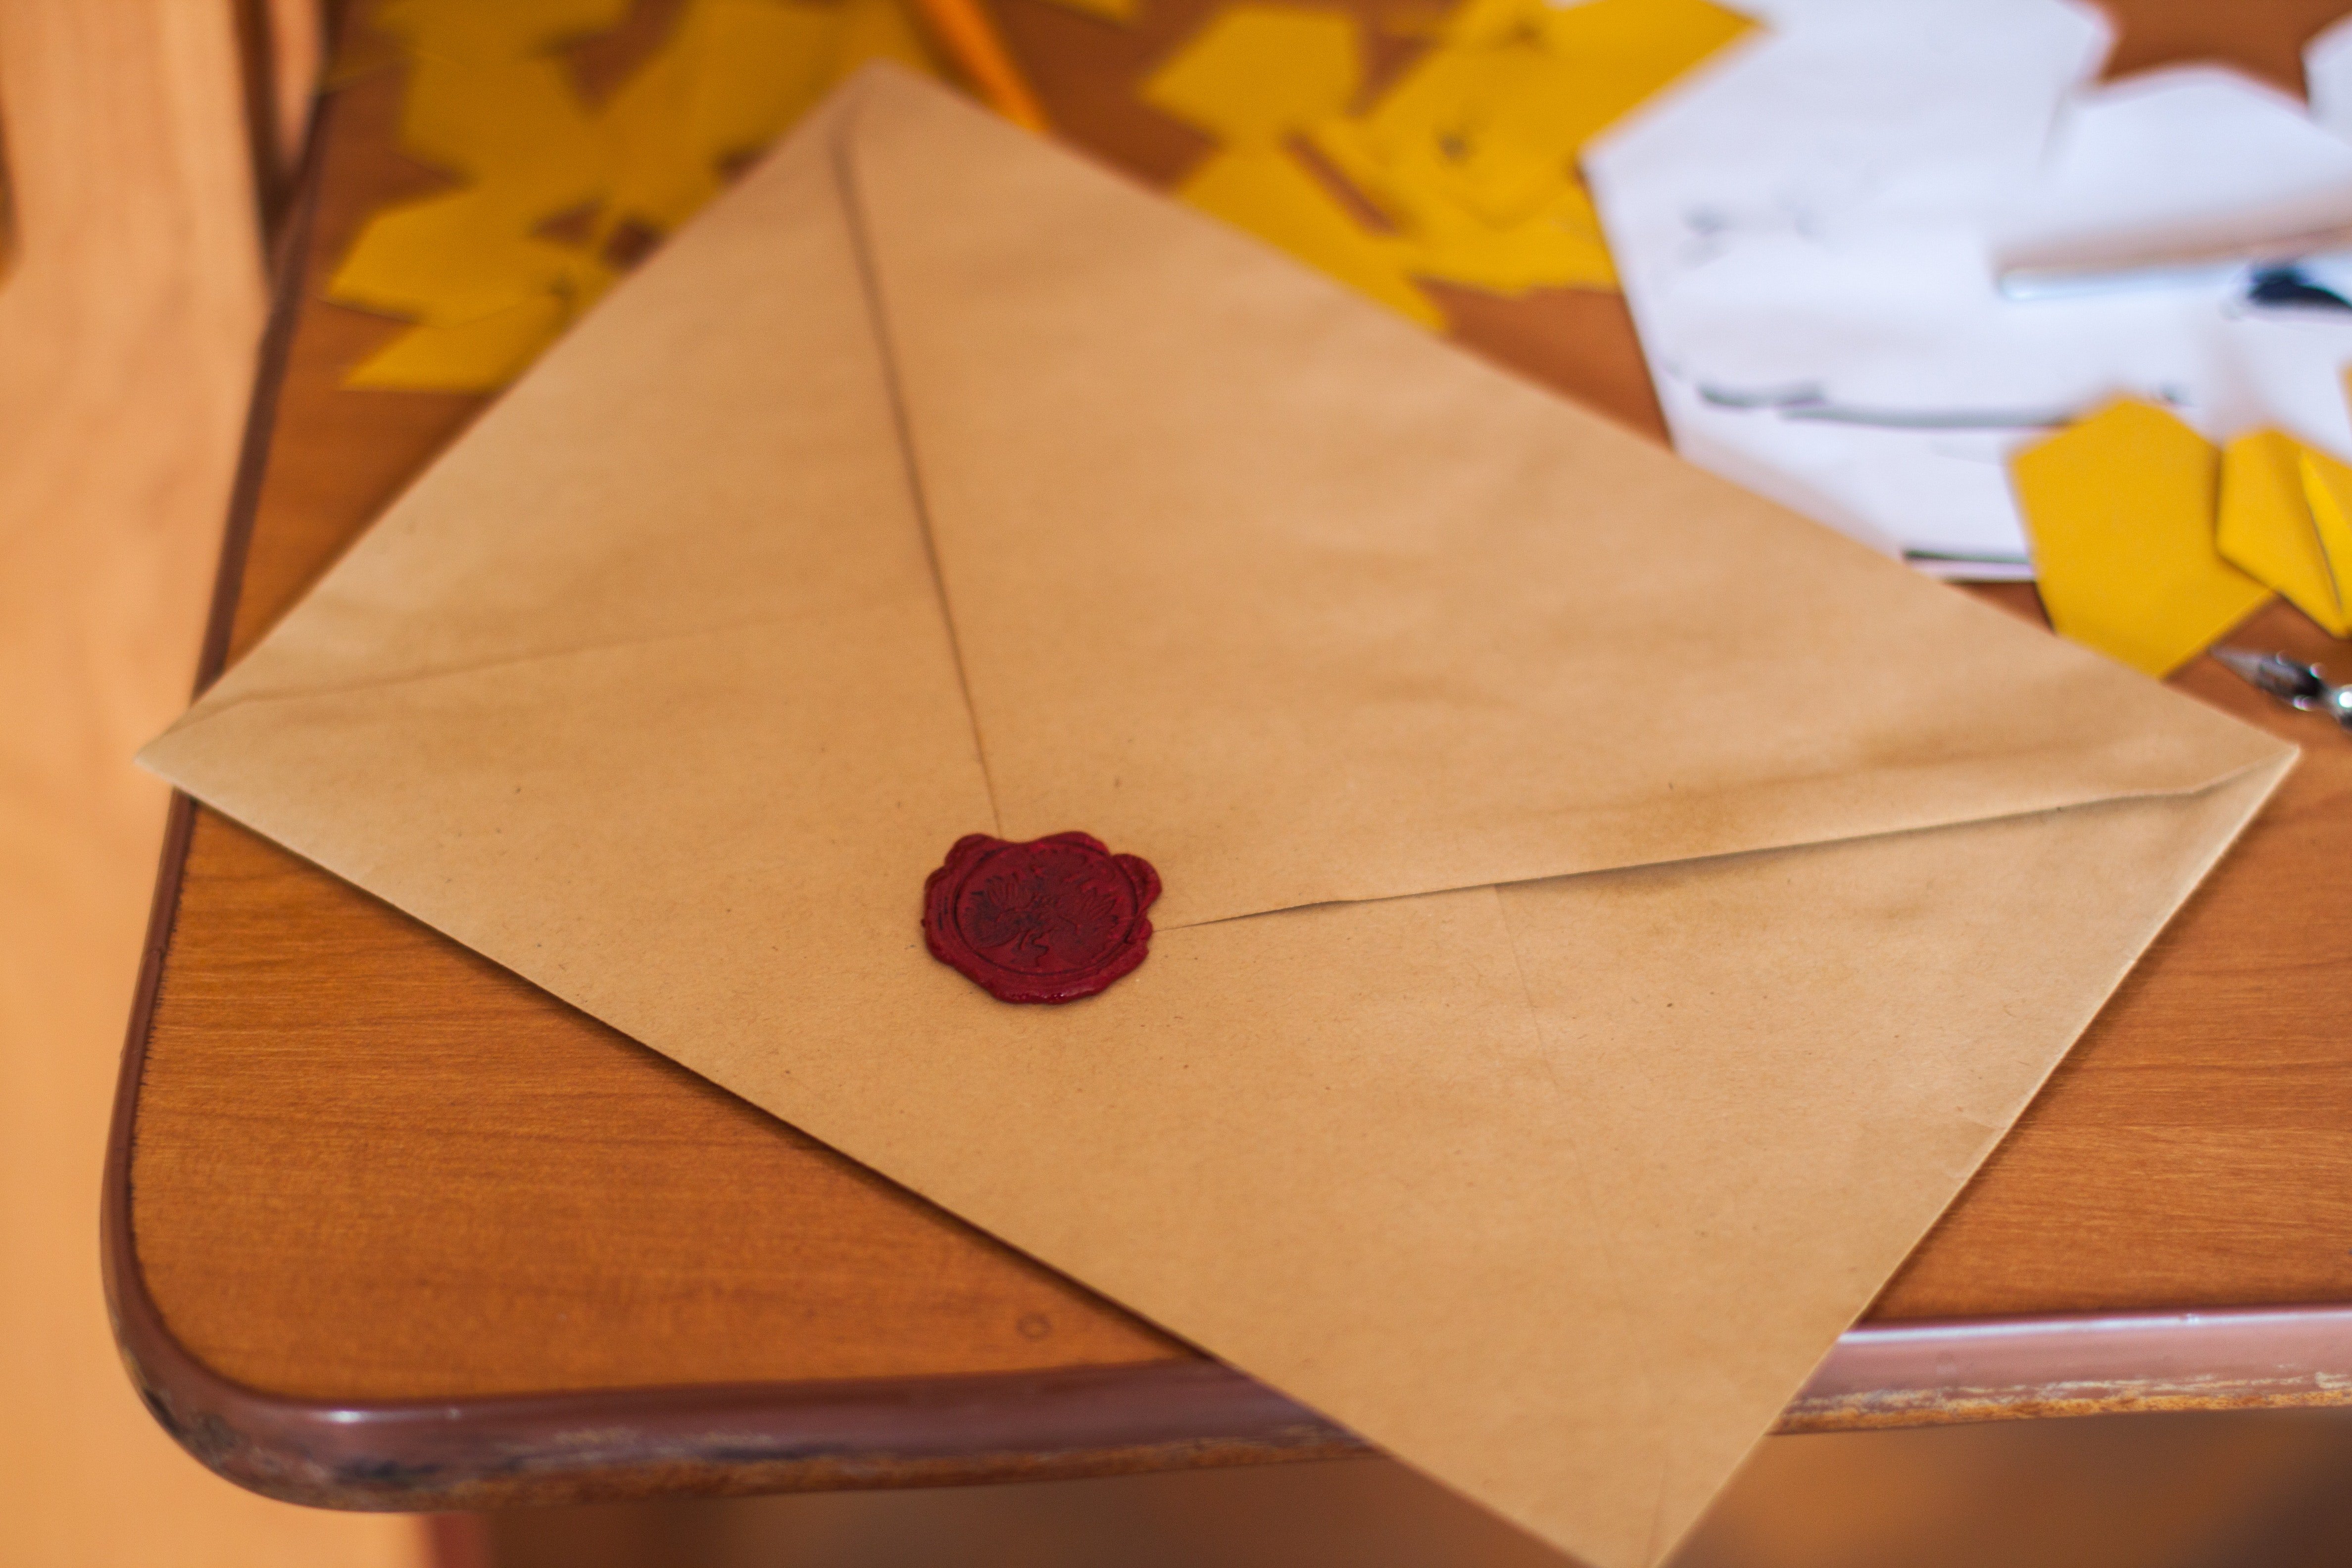 William schickte Aiden Briefe, aber Edward versteckte sie vor Aiden | Quelle: Pexels